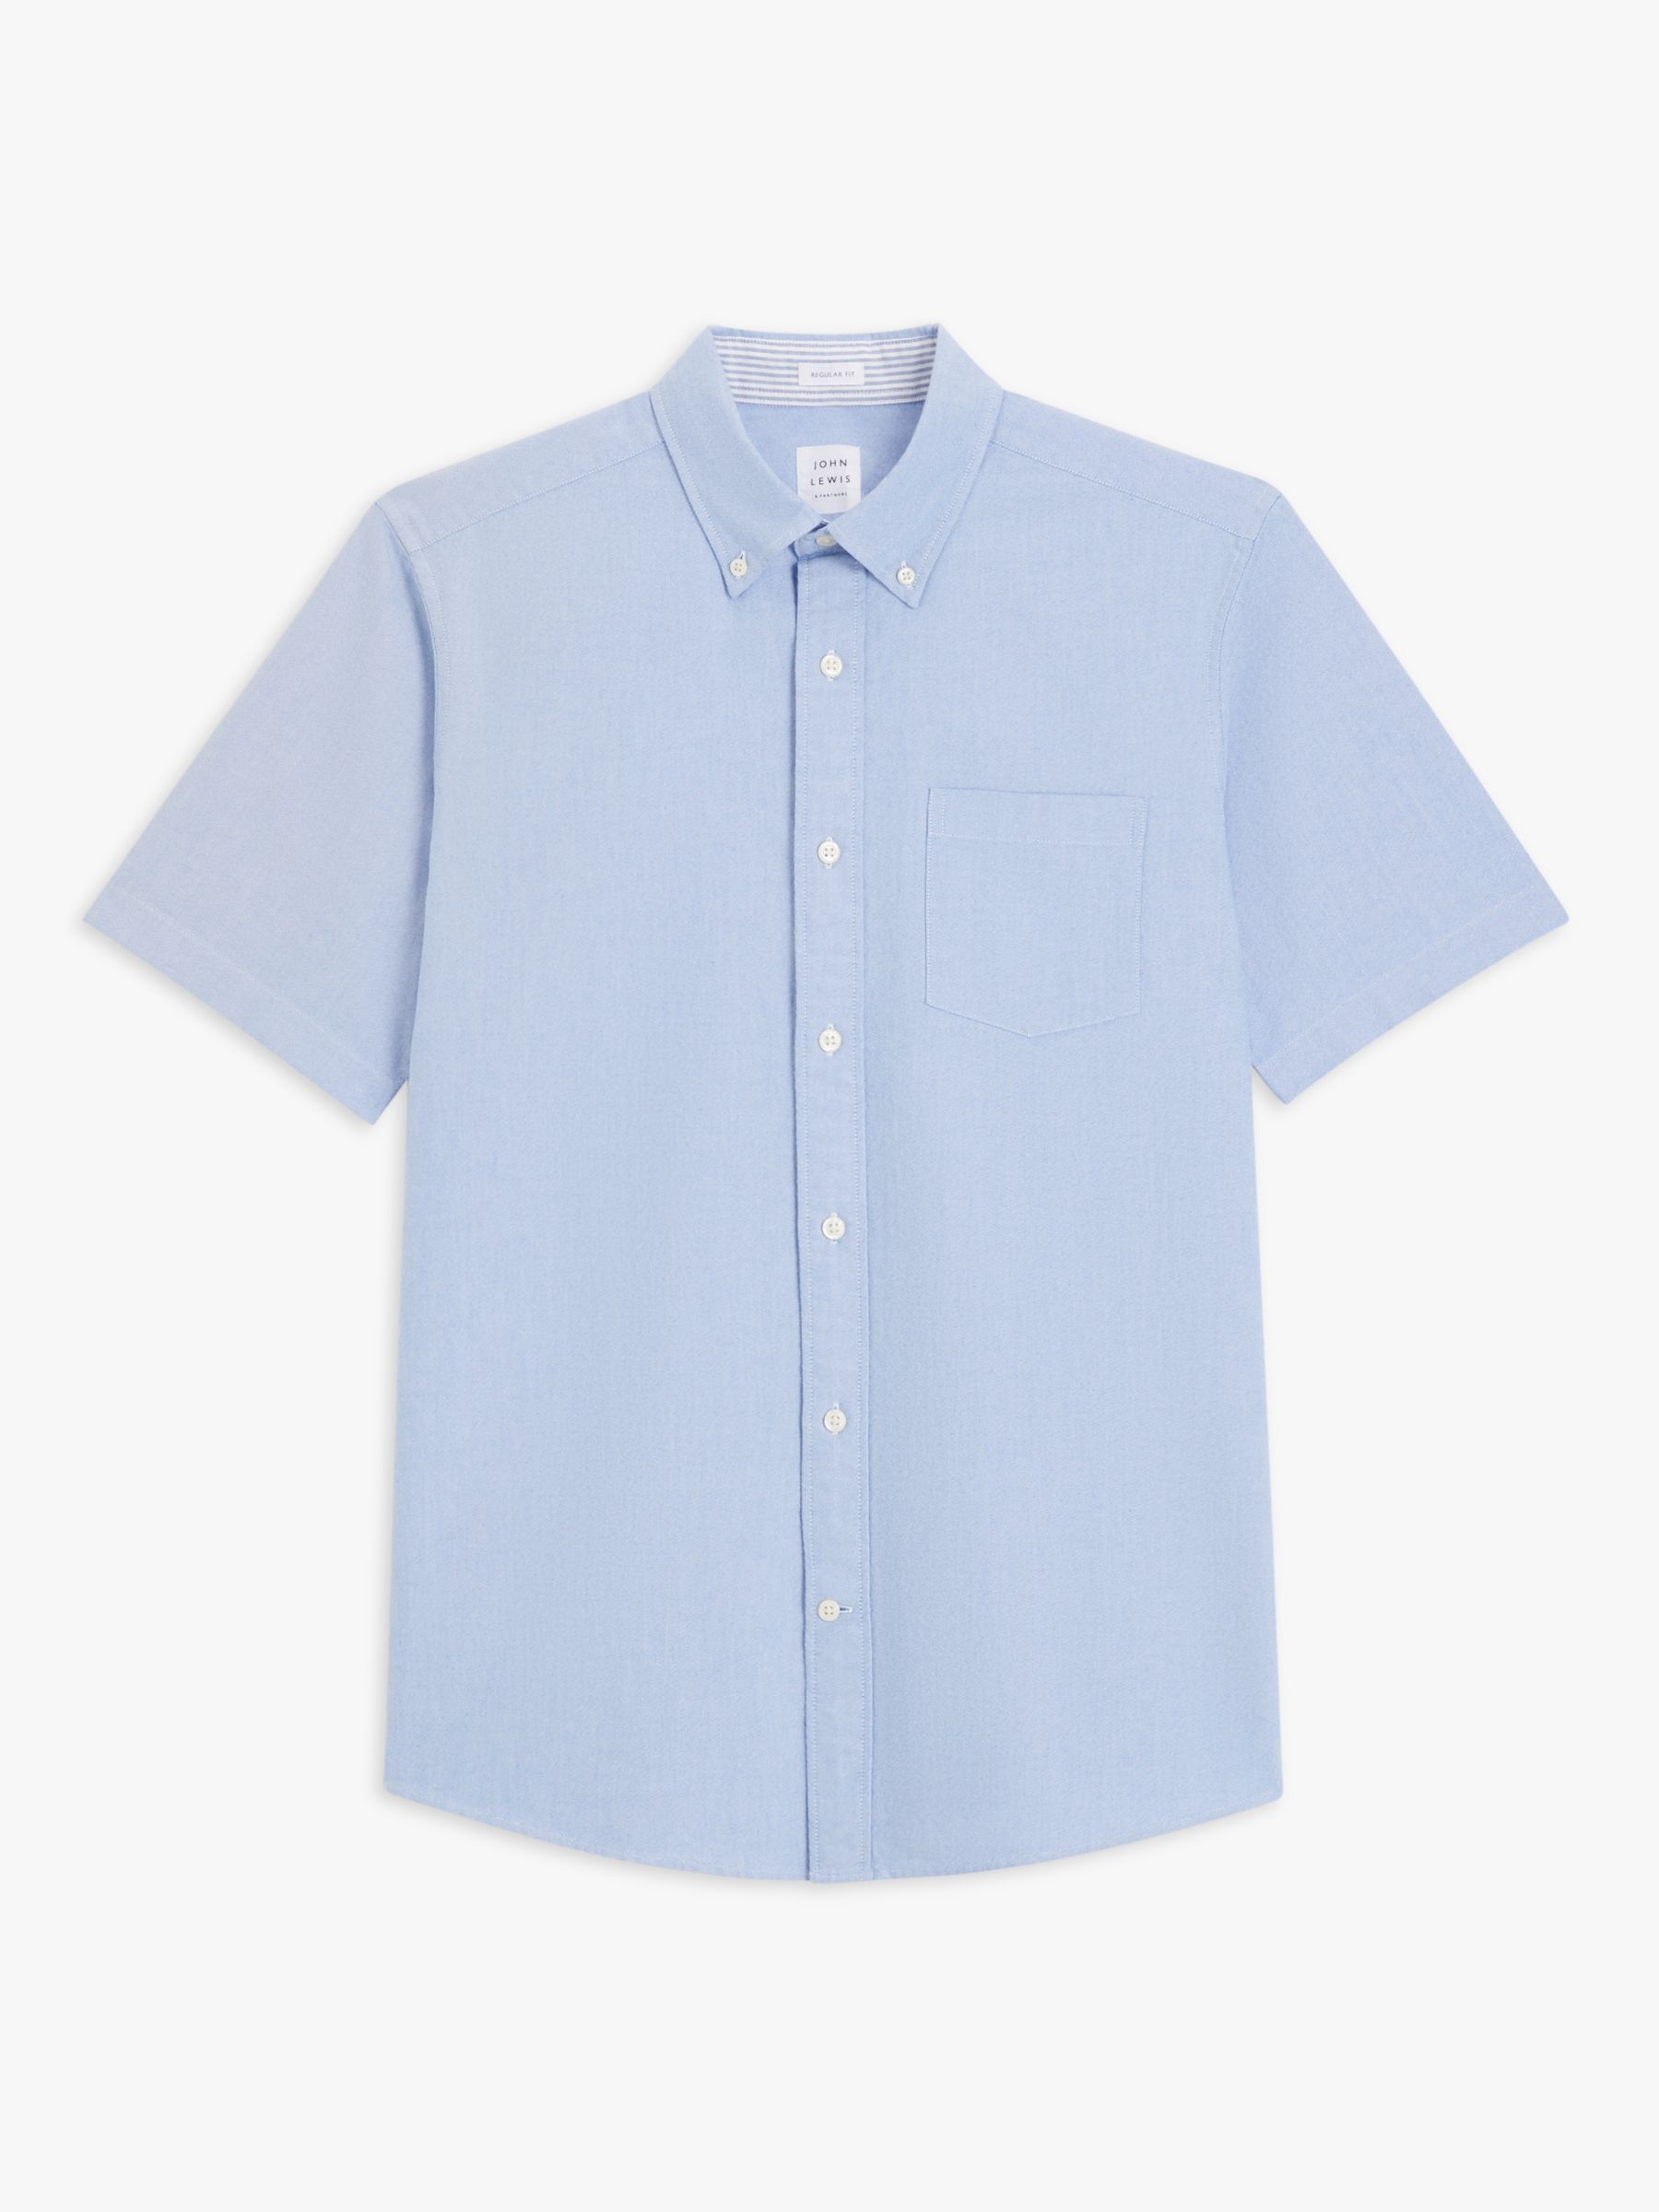 John Lewis Regular Fit Short Sleeve Shirt, Blue, S